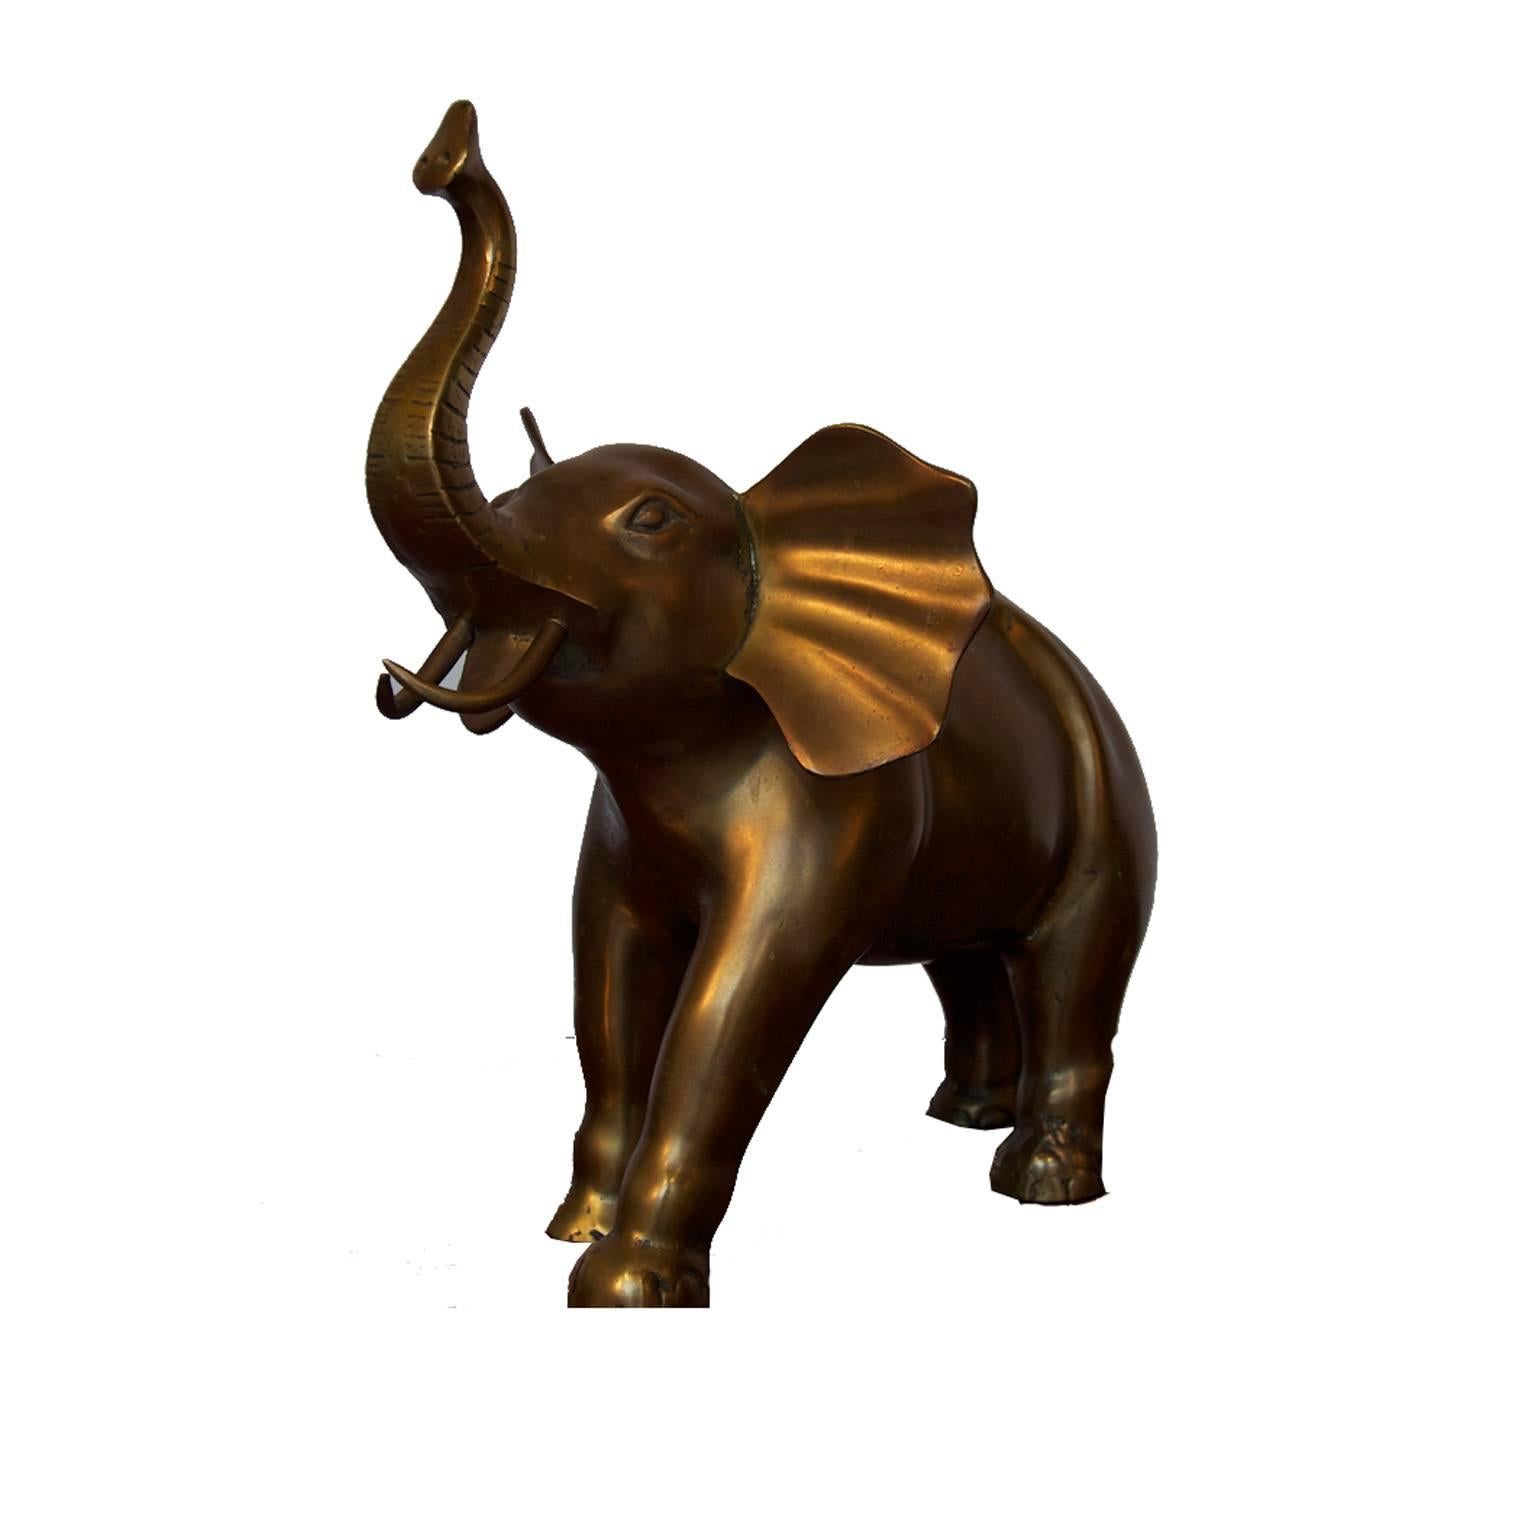 Solid brass sculpture of an elephant.